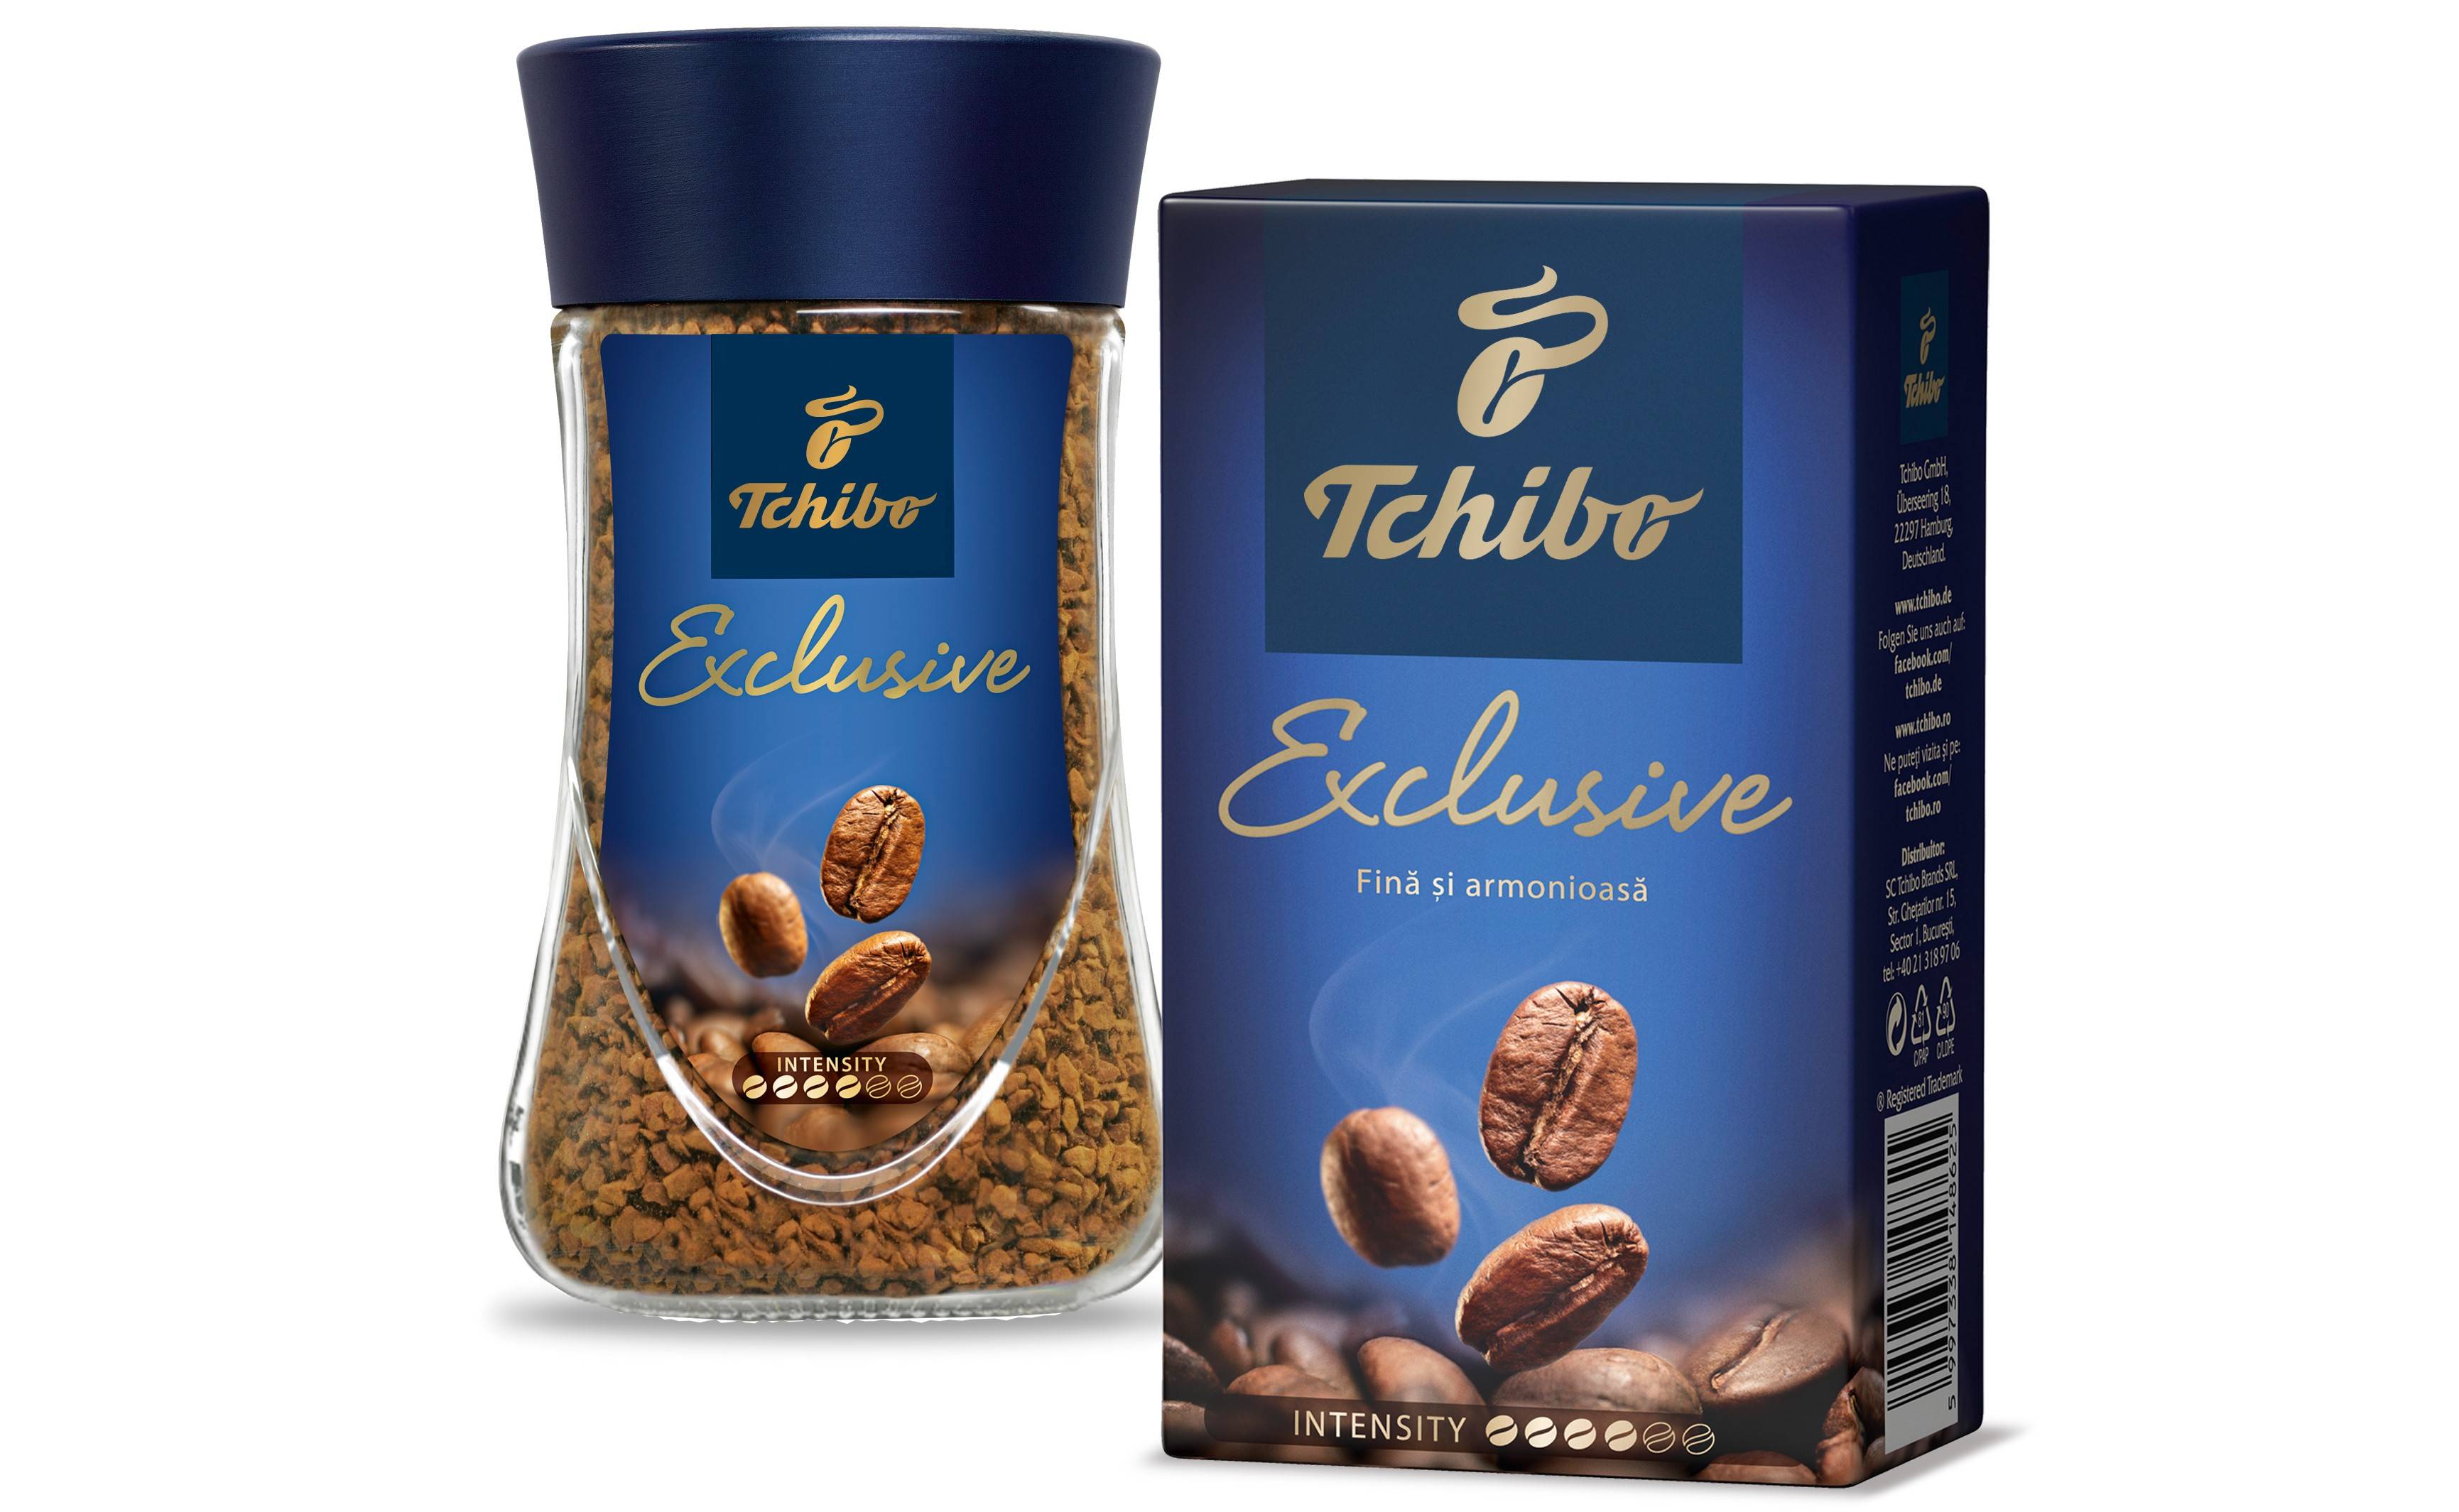 Кофе tchibo (чибо) - бренд, ассортимент, цены, отзывы